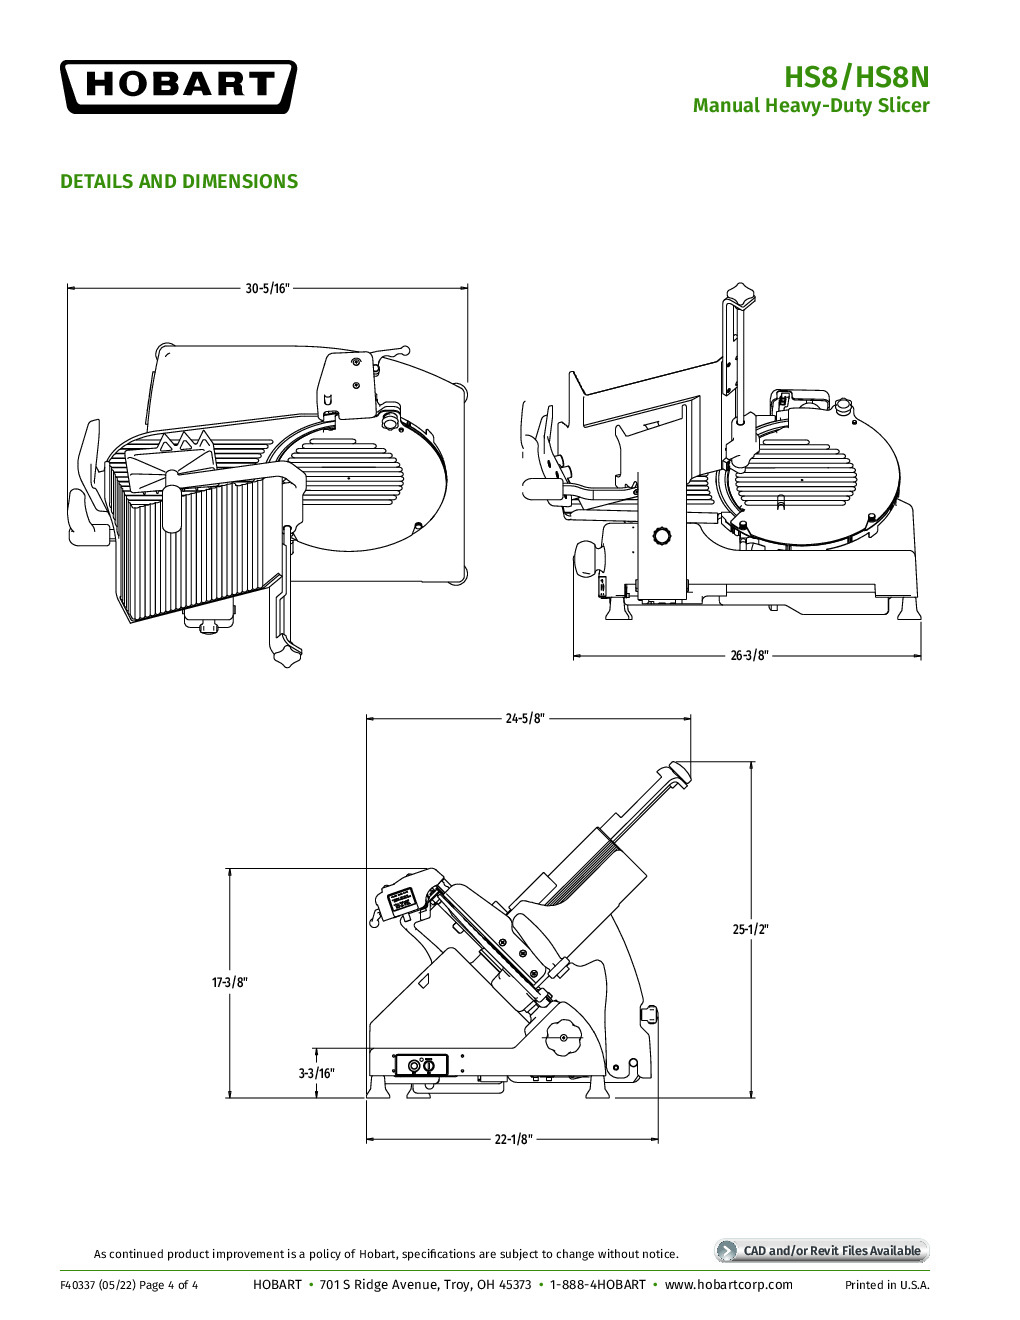 Hobart HS8N-HV60C High Voltage Manual Slicer with 13